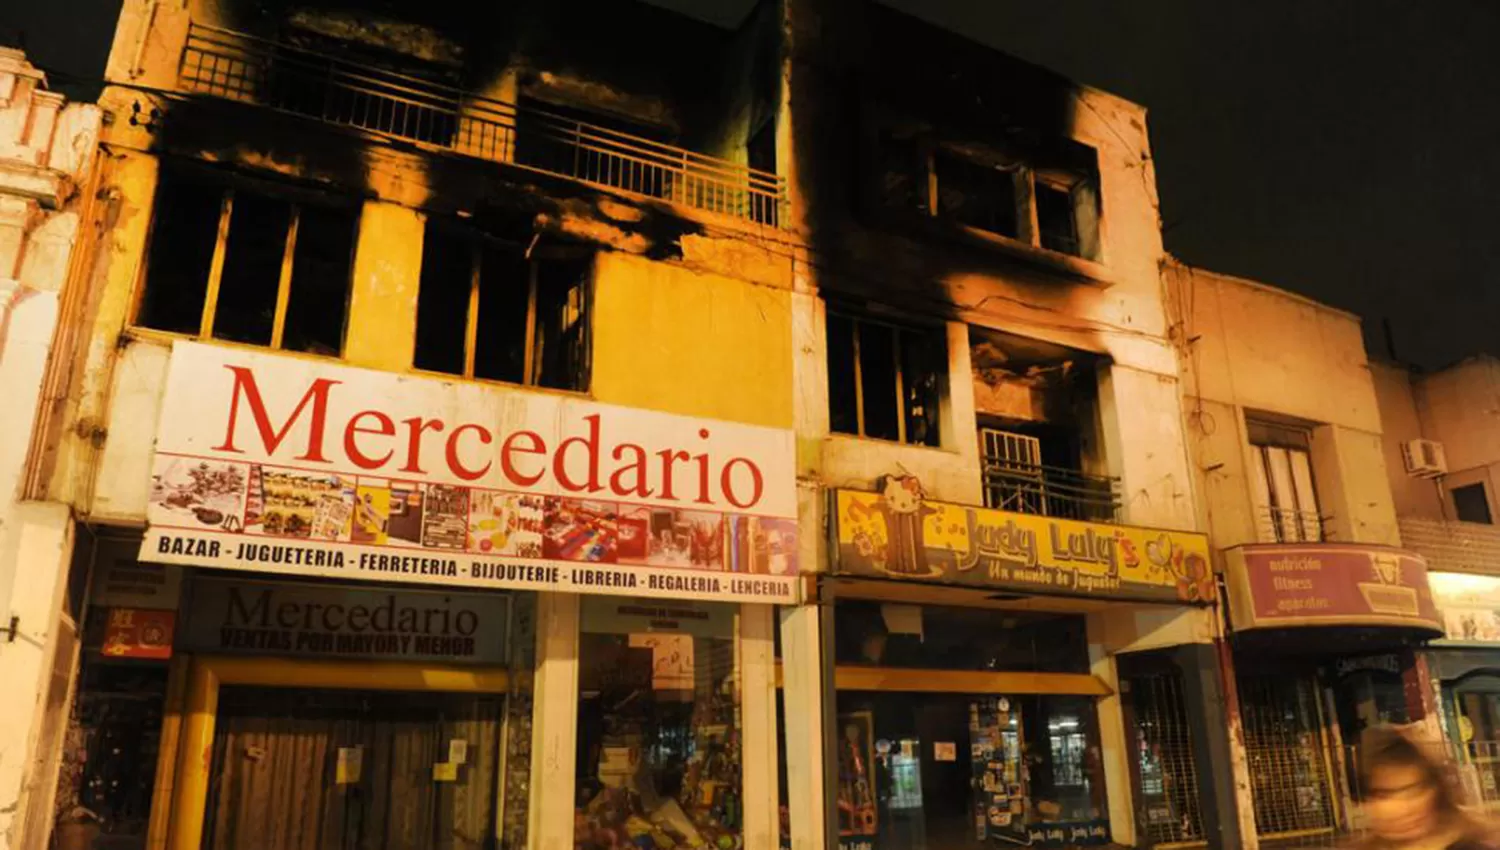 24 DE SEPTIEMBRE AL 600, EN 2013. Los pisos superiores de los locales comerciales fueron destruidos por las llamas. Finalmente, se demolió por completo el inmueble. LA GACETA / ANTONIO FERRONI